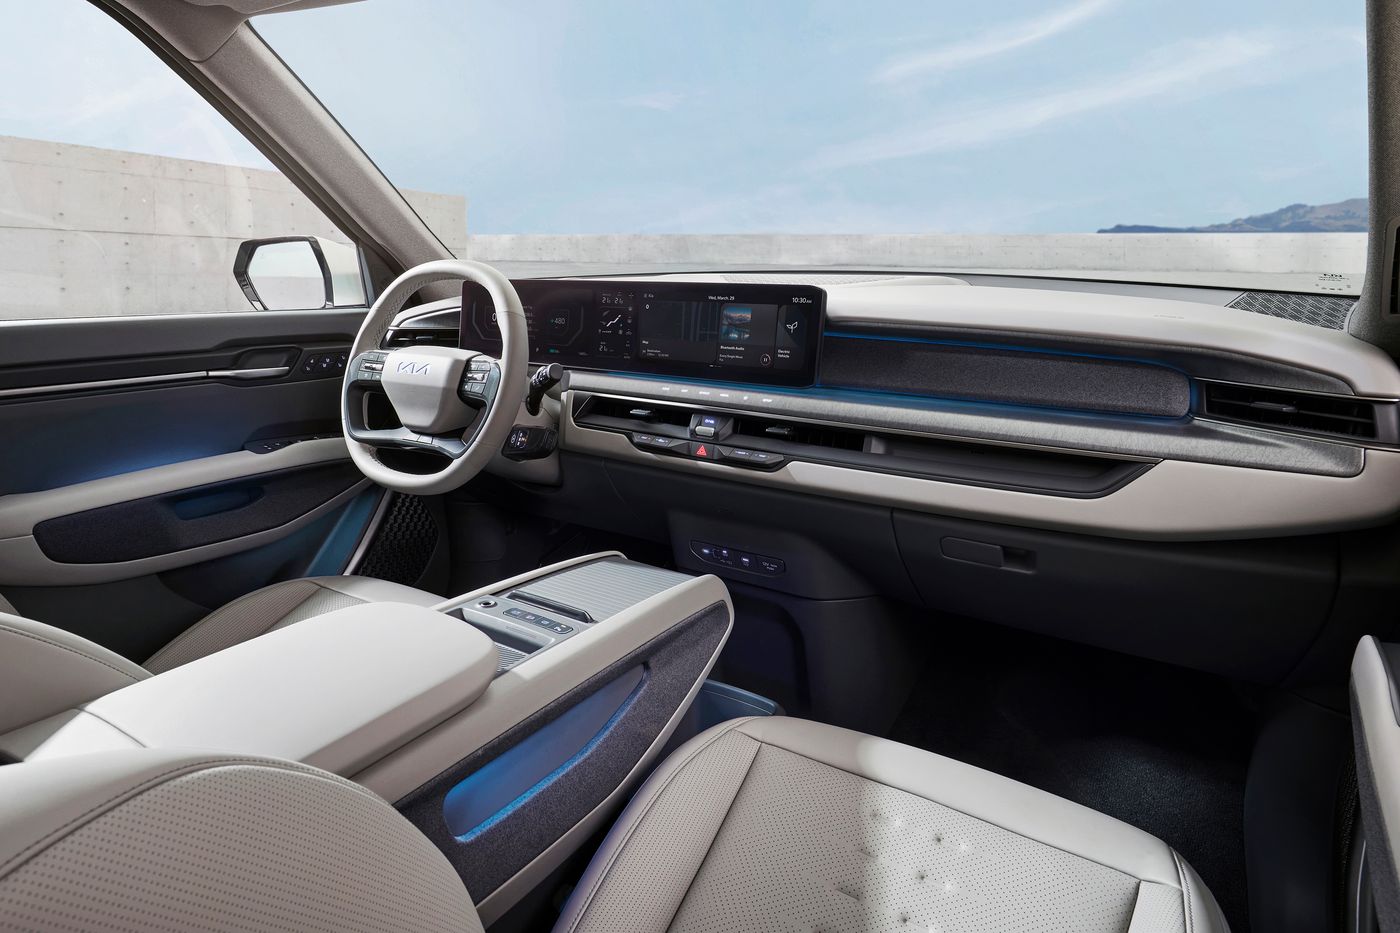 Kia ha desvelado cómo será su futuro vehículo eléctrico que lanzará en 2023, el EV9, un SUV de hasta siete plazas y cinco metros de longitud